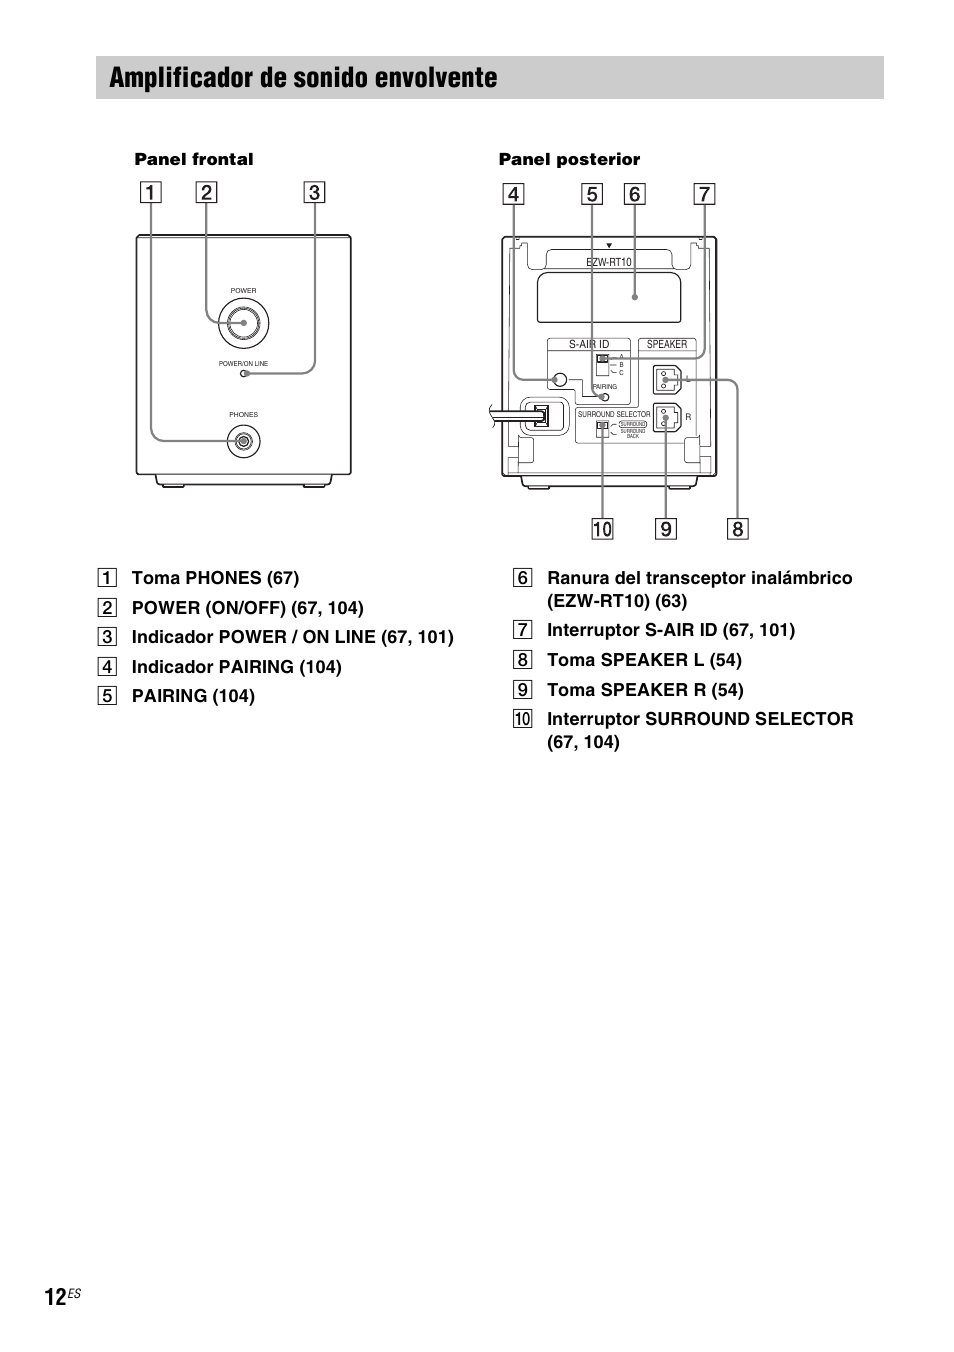 Amplificador de sonido envolvente, Panel frontal panel posterior | Sony BDV-IS1000 Manual del usuario | Página 12 / 315